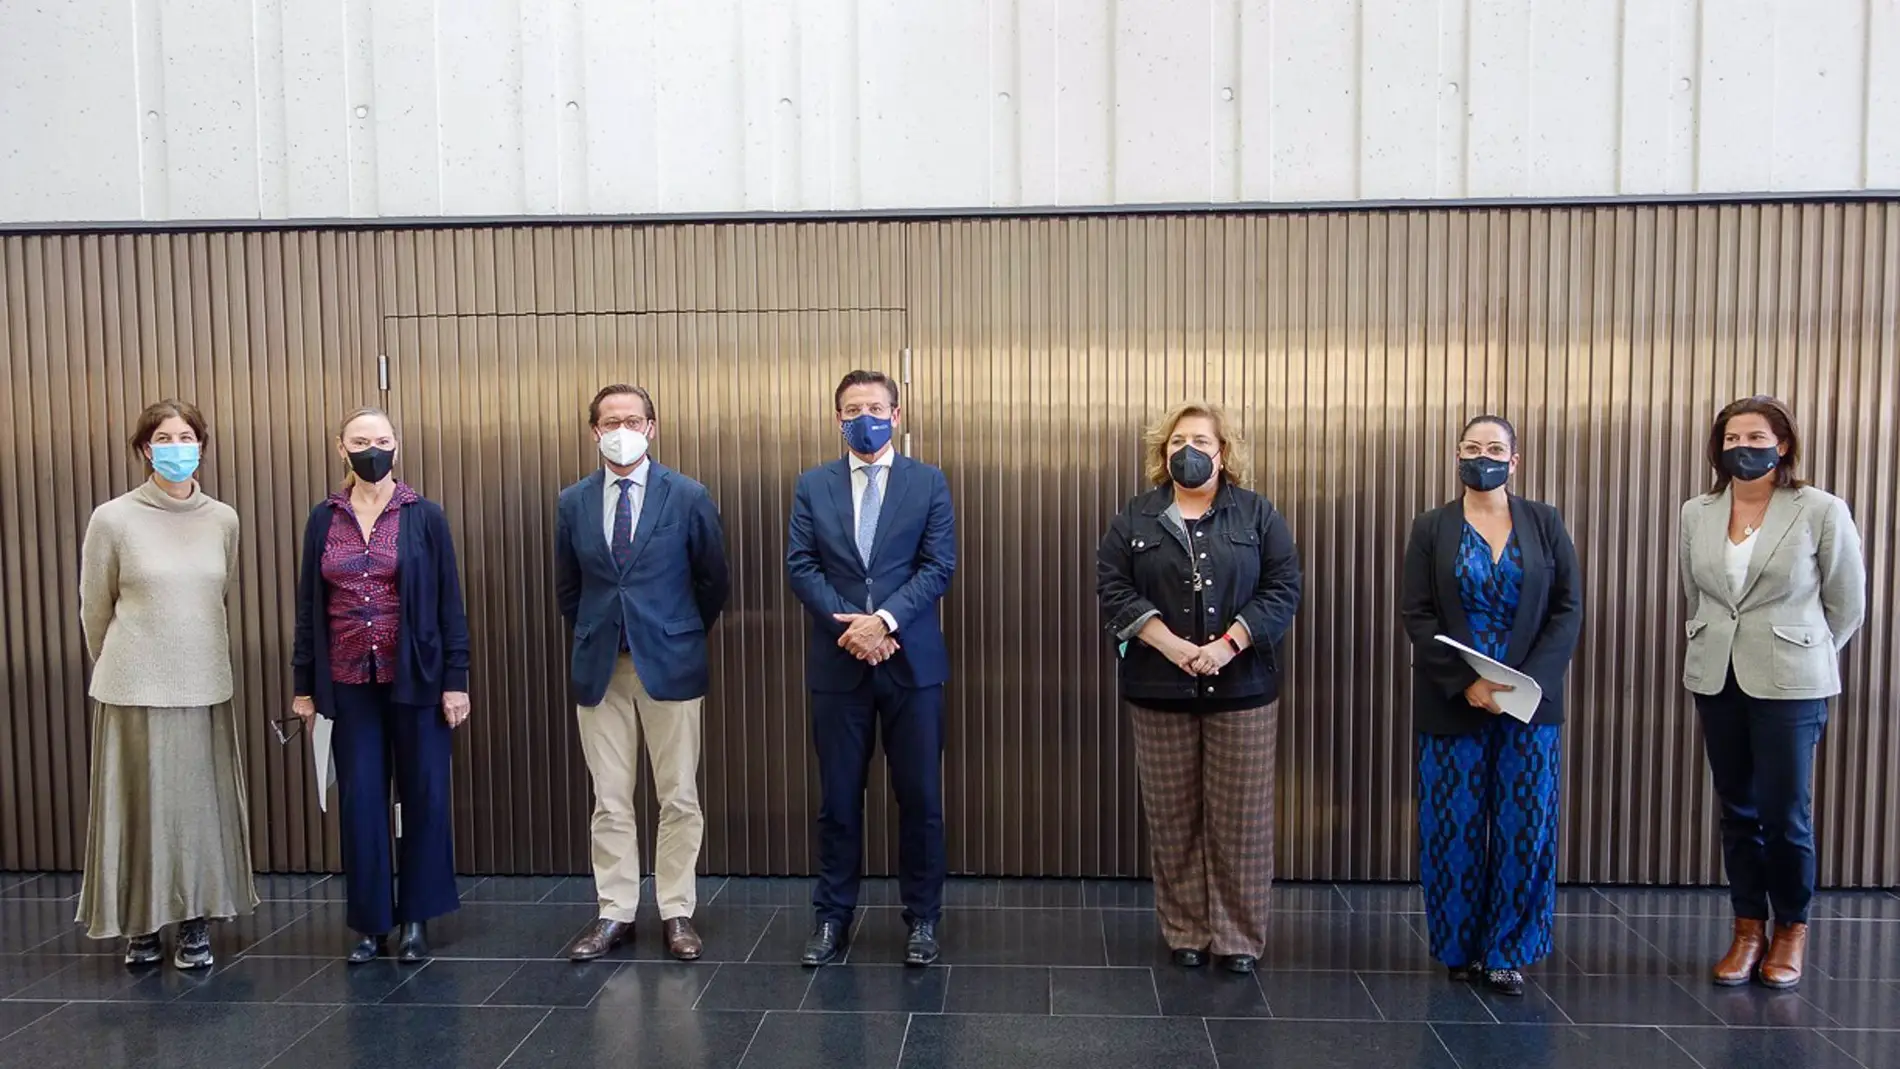 El Centro Lorca acoge una muestra con las propuestas artísticas de ocho creadores vinculados a Granada